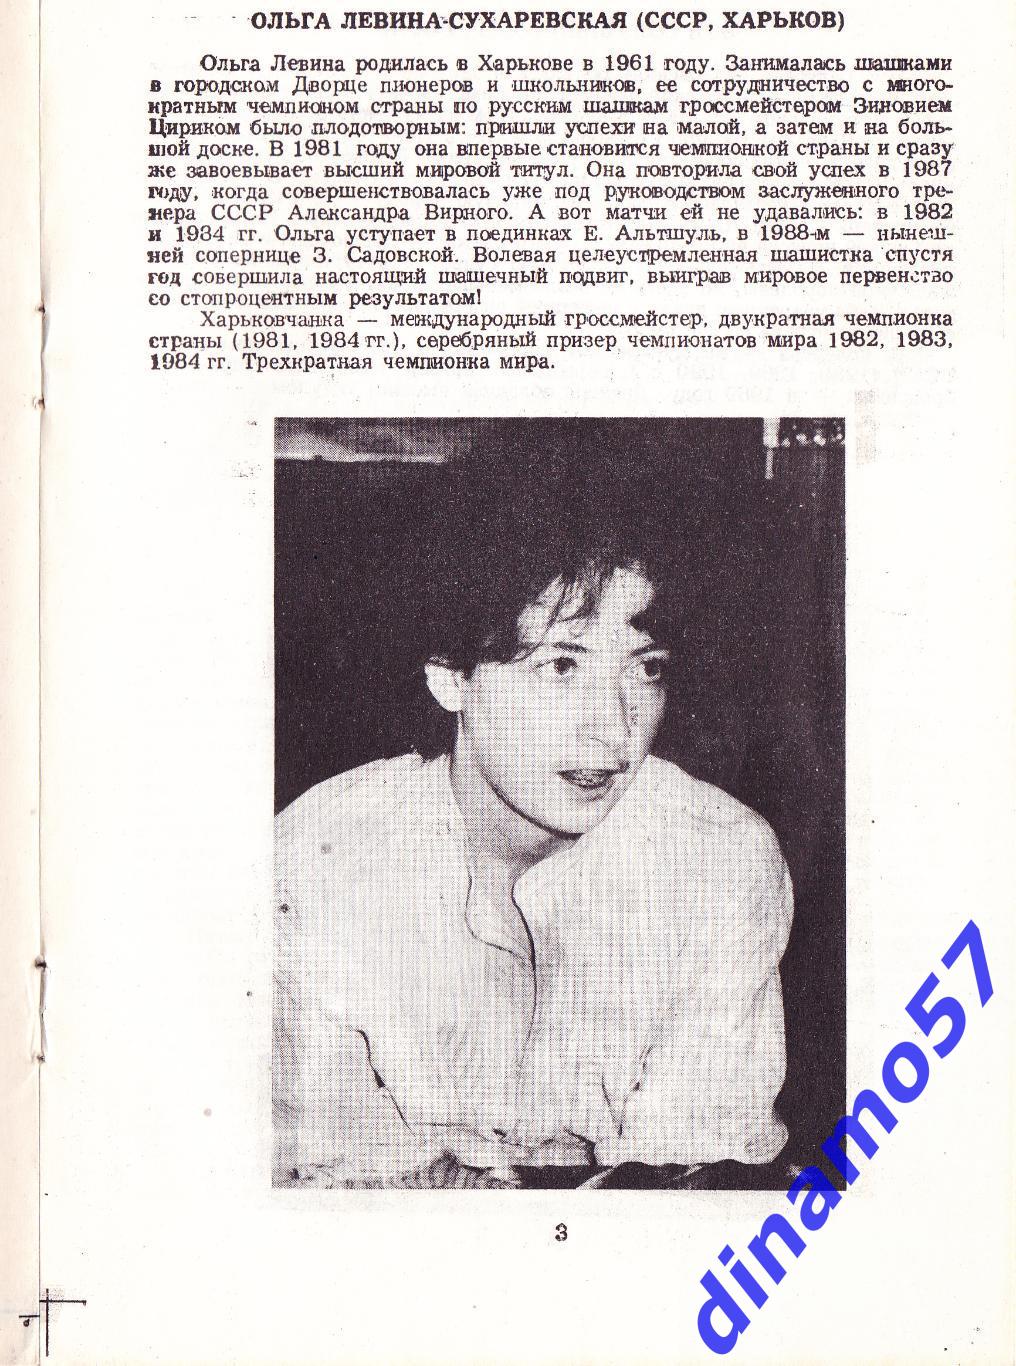 Шашки - Матч за звание чемпионки мира - 1990 автограф 1